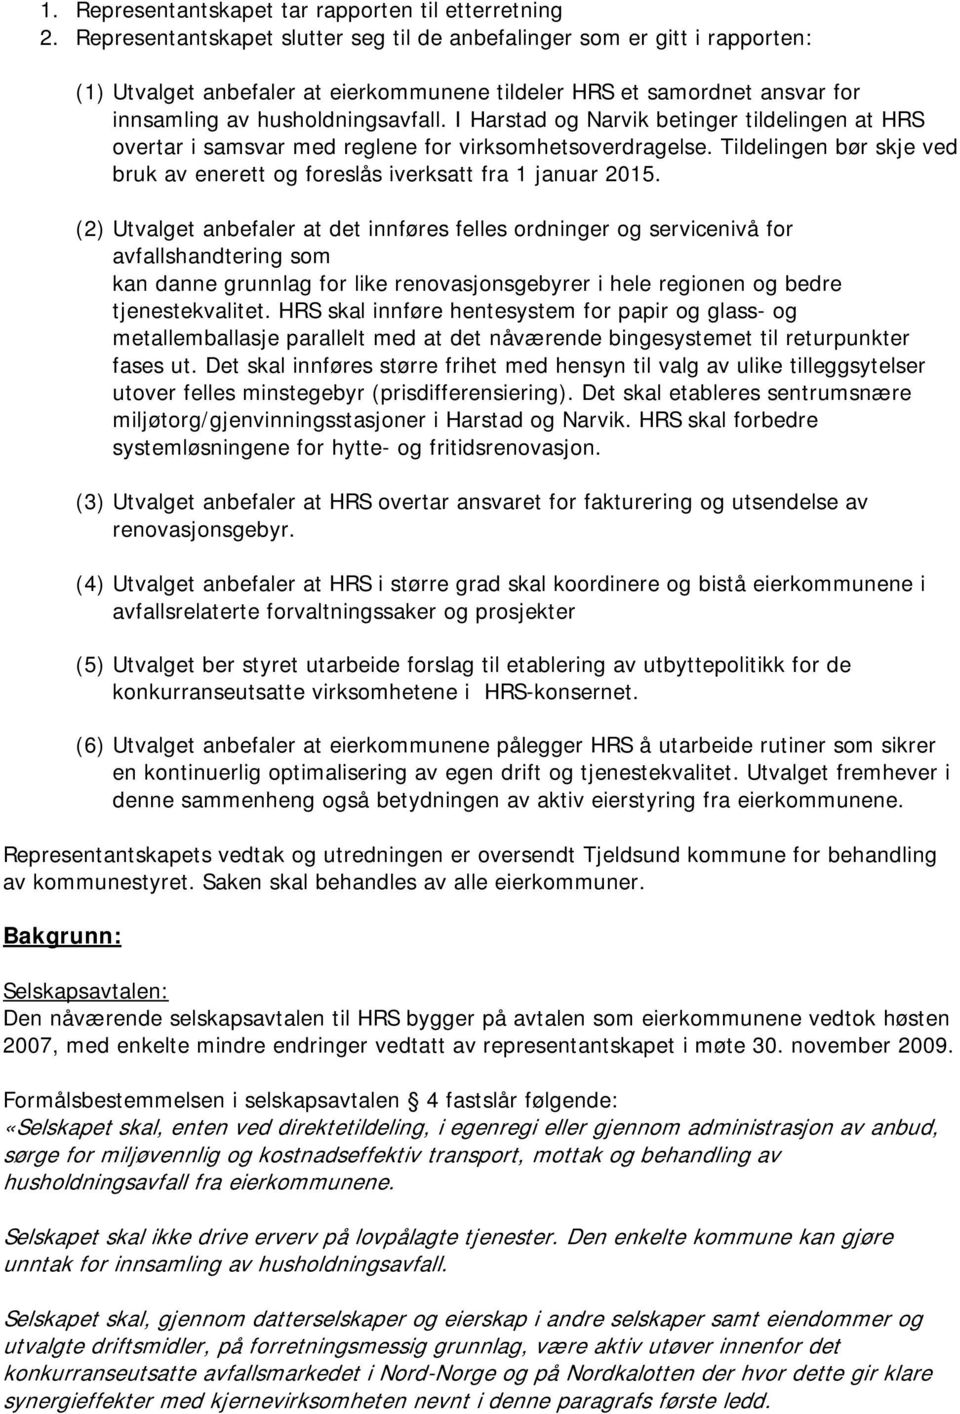 I Harstad og Narvik betinger tildelingen at HRS overtar i samsvar med reglene for virksomhetsoverdragelse. Tildelingen bør skje ved bruk av enerett og foreslås iverksatt fra 1 januar 2015.